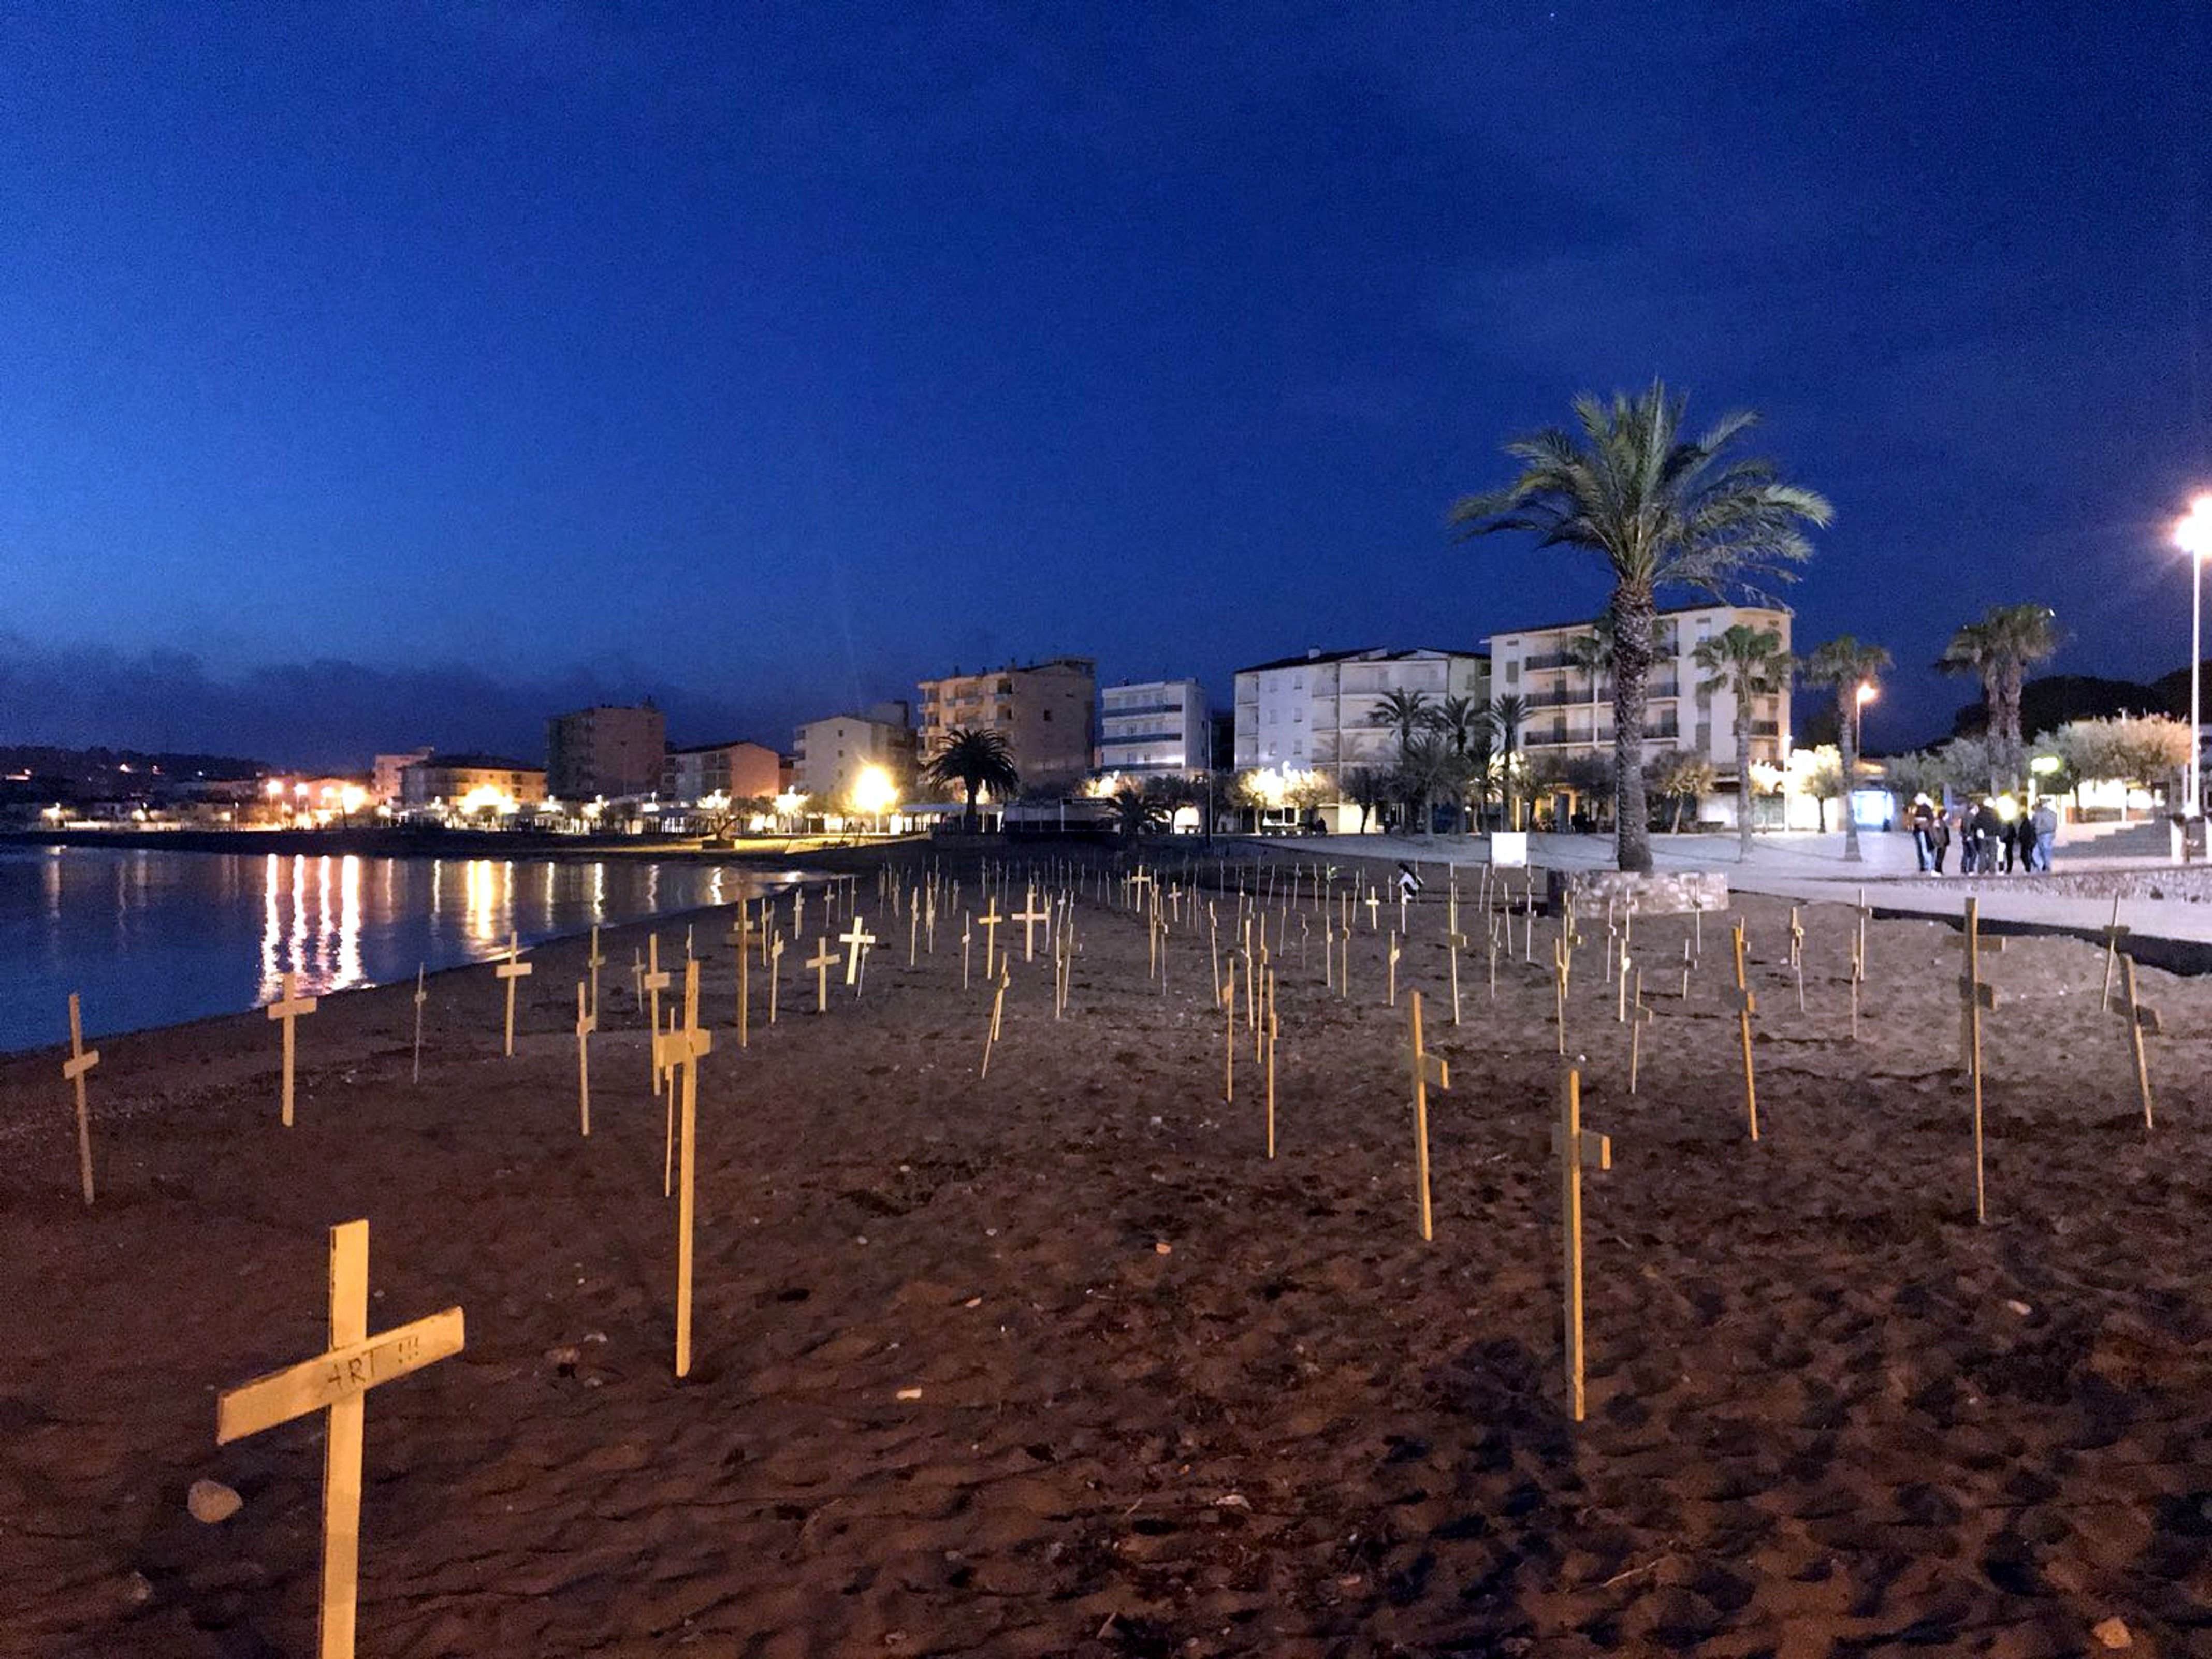 Los CDR plantan cruces en las playas de l'Escala en reivindicación de libertad